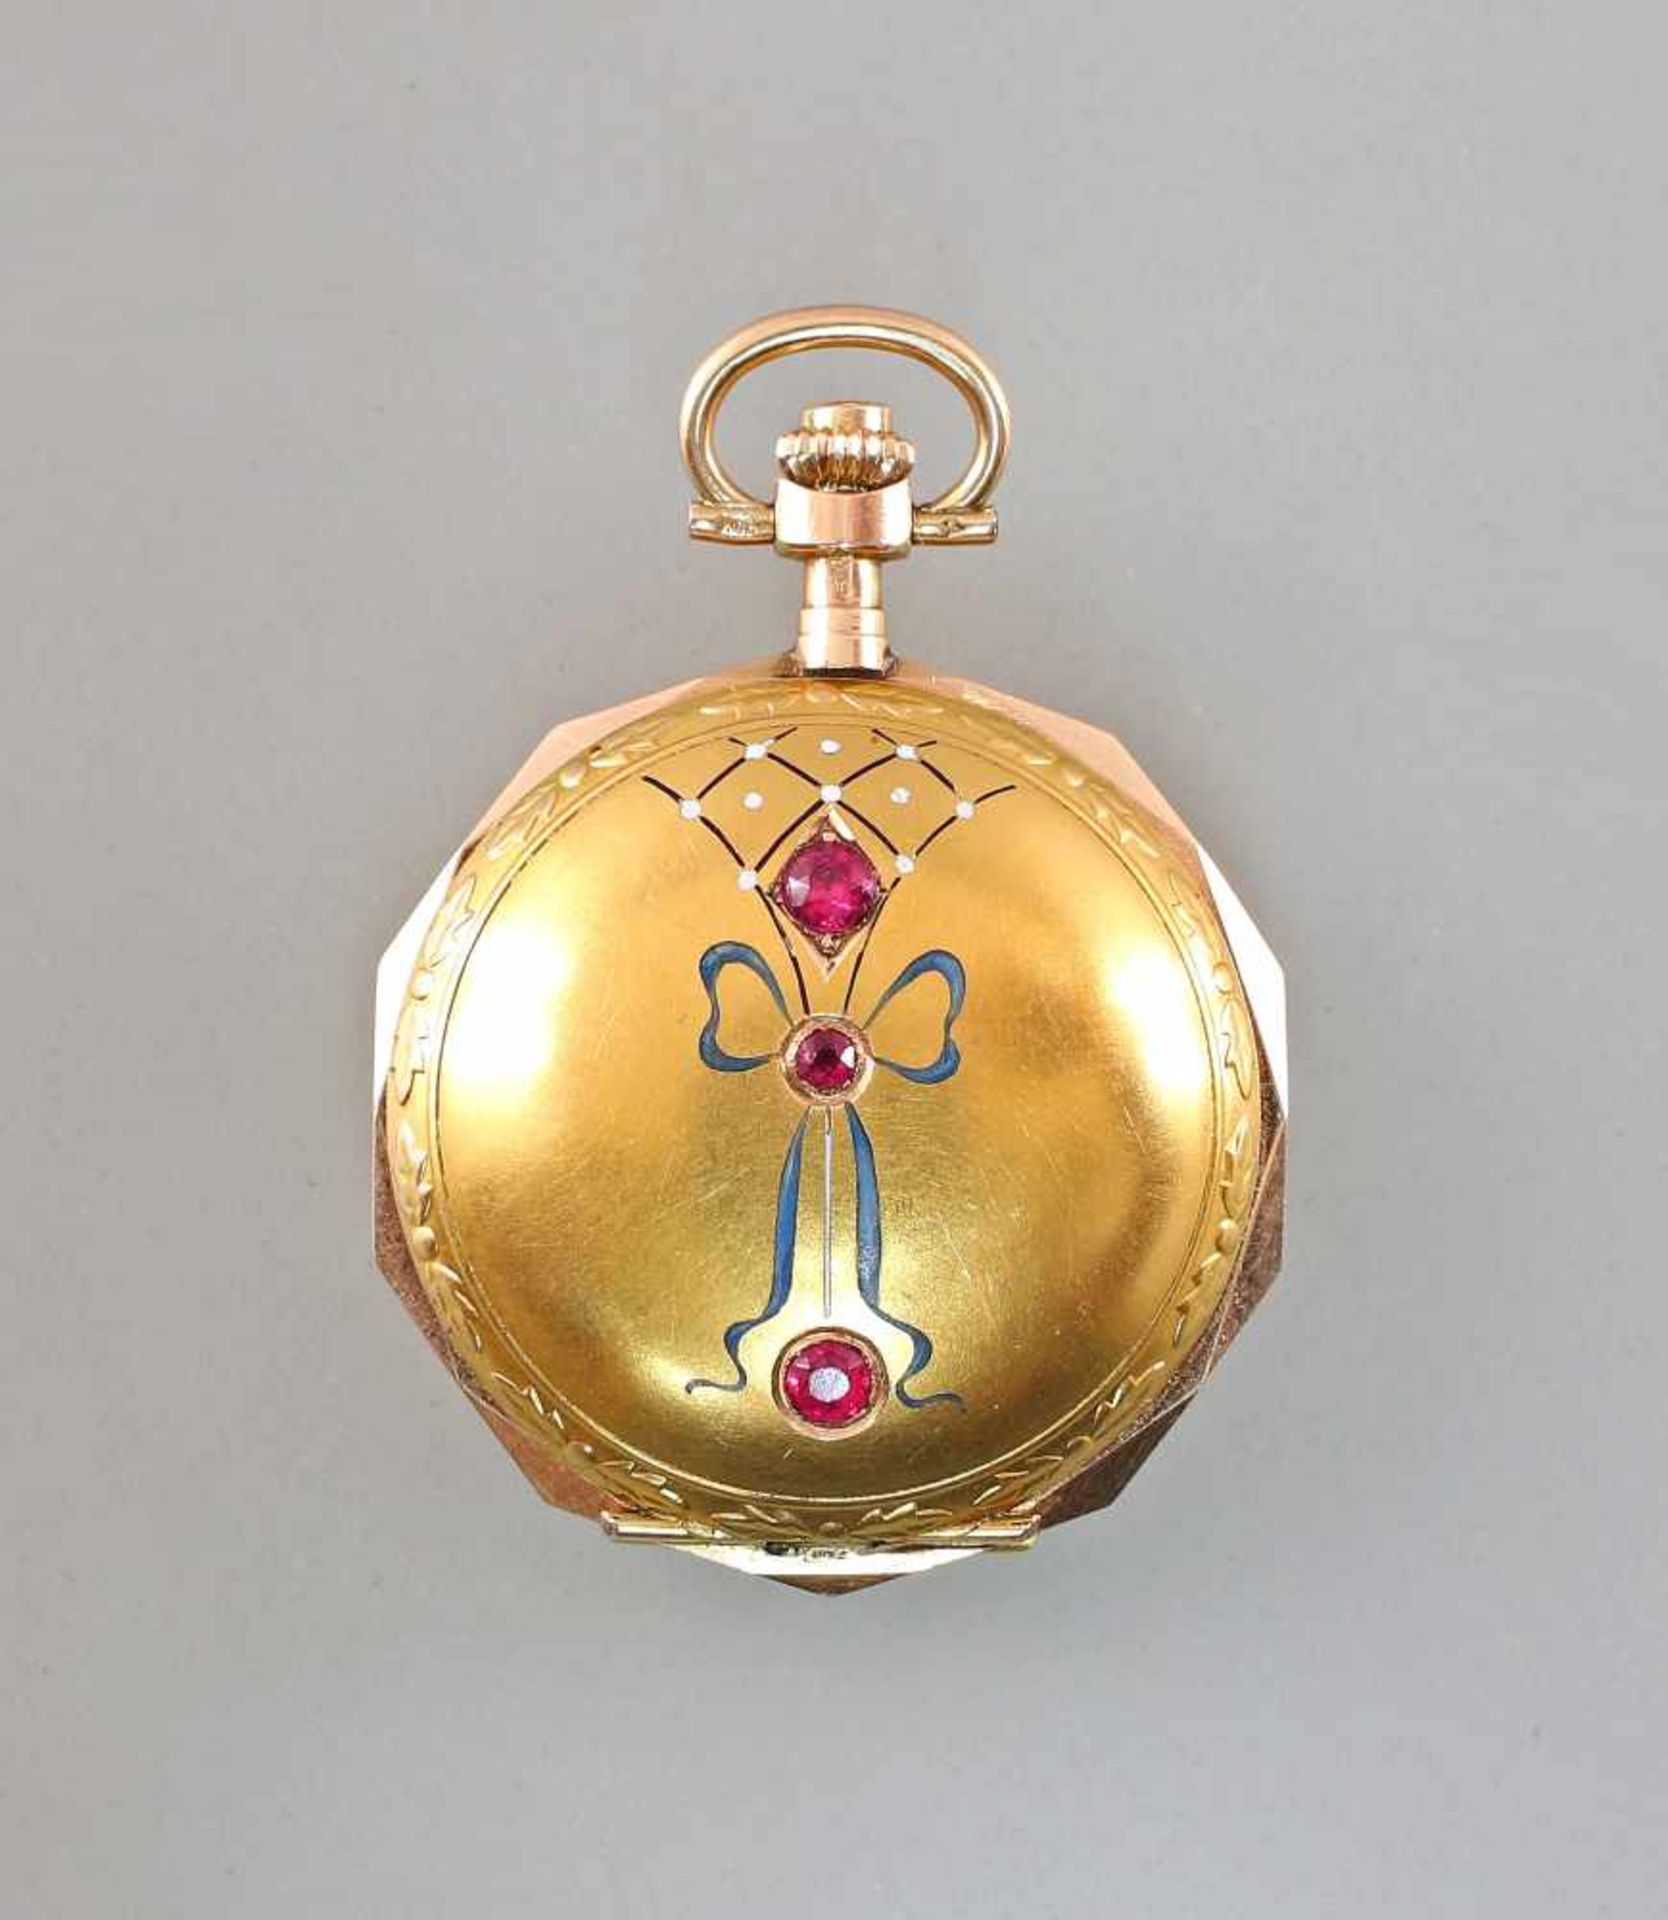 Goldene Savonette Damentaschenuhr Spätbiedermeierum 1880, 585er Gold, alle 3 Deckel gepunzt 14K